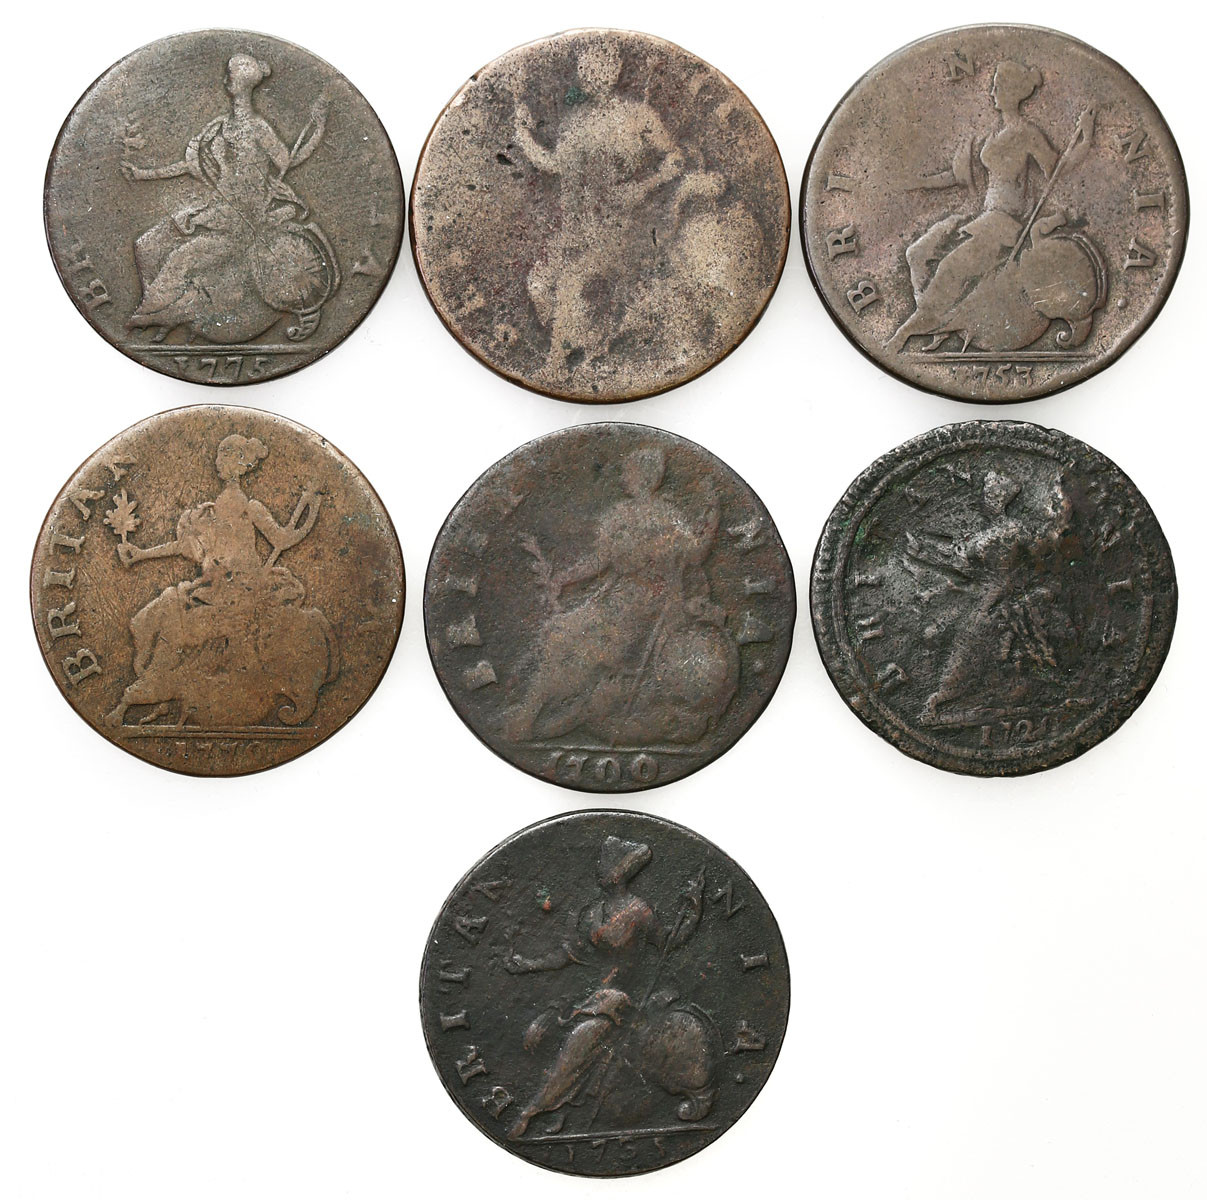 Wielka Brytania. Halfpenny 1700-1775, zestaw 7 monet